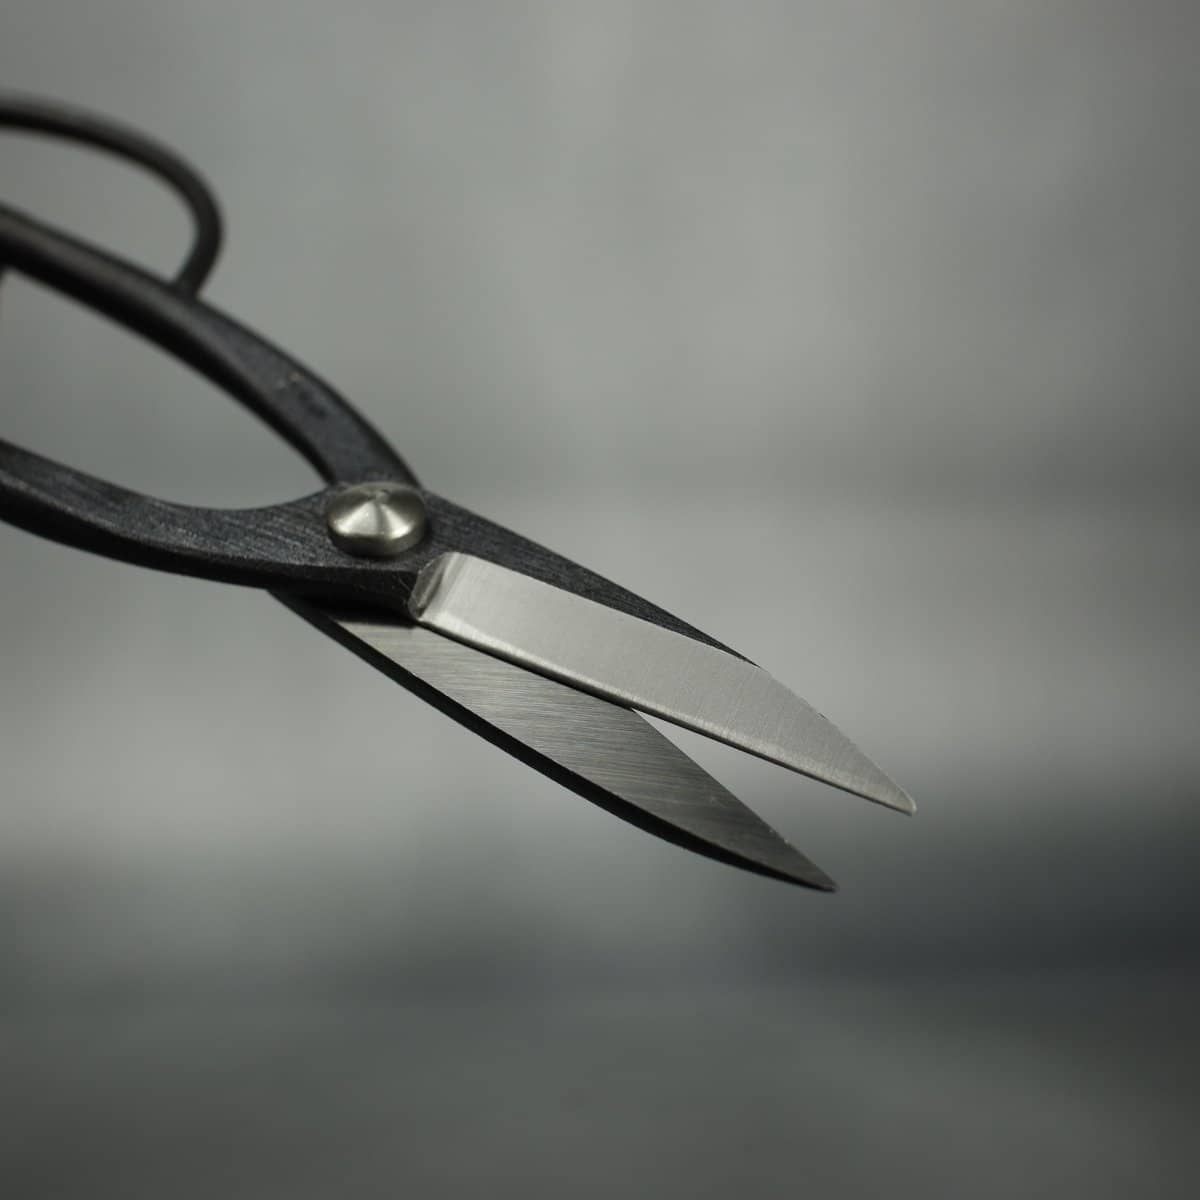 Kikuwa 200mm Aogami Steel Craftsman Professional Bonsai Scissors